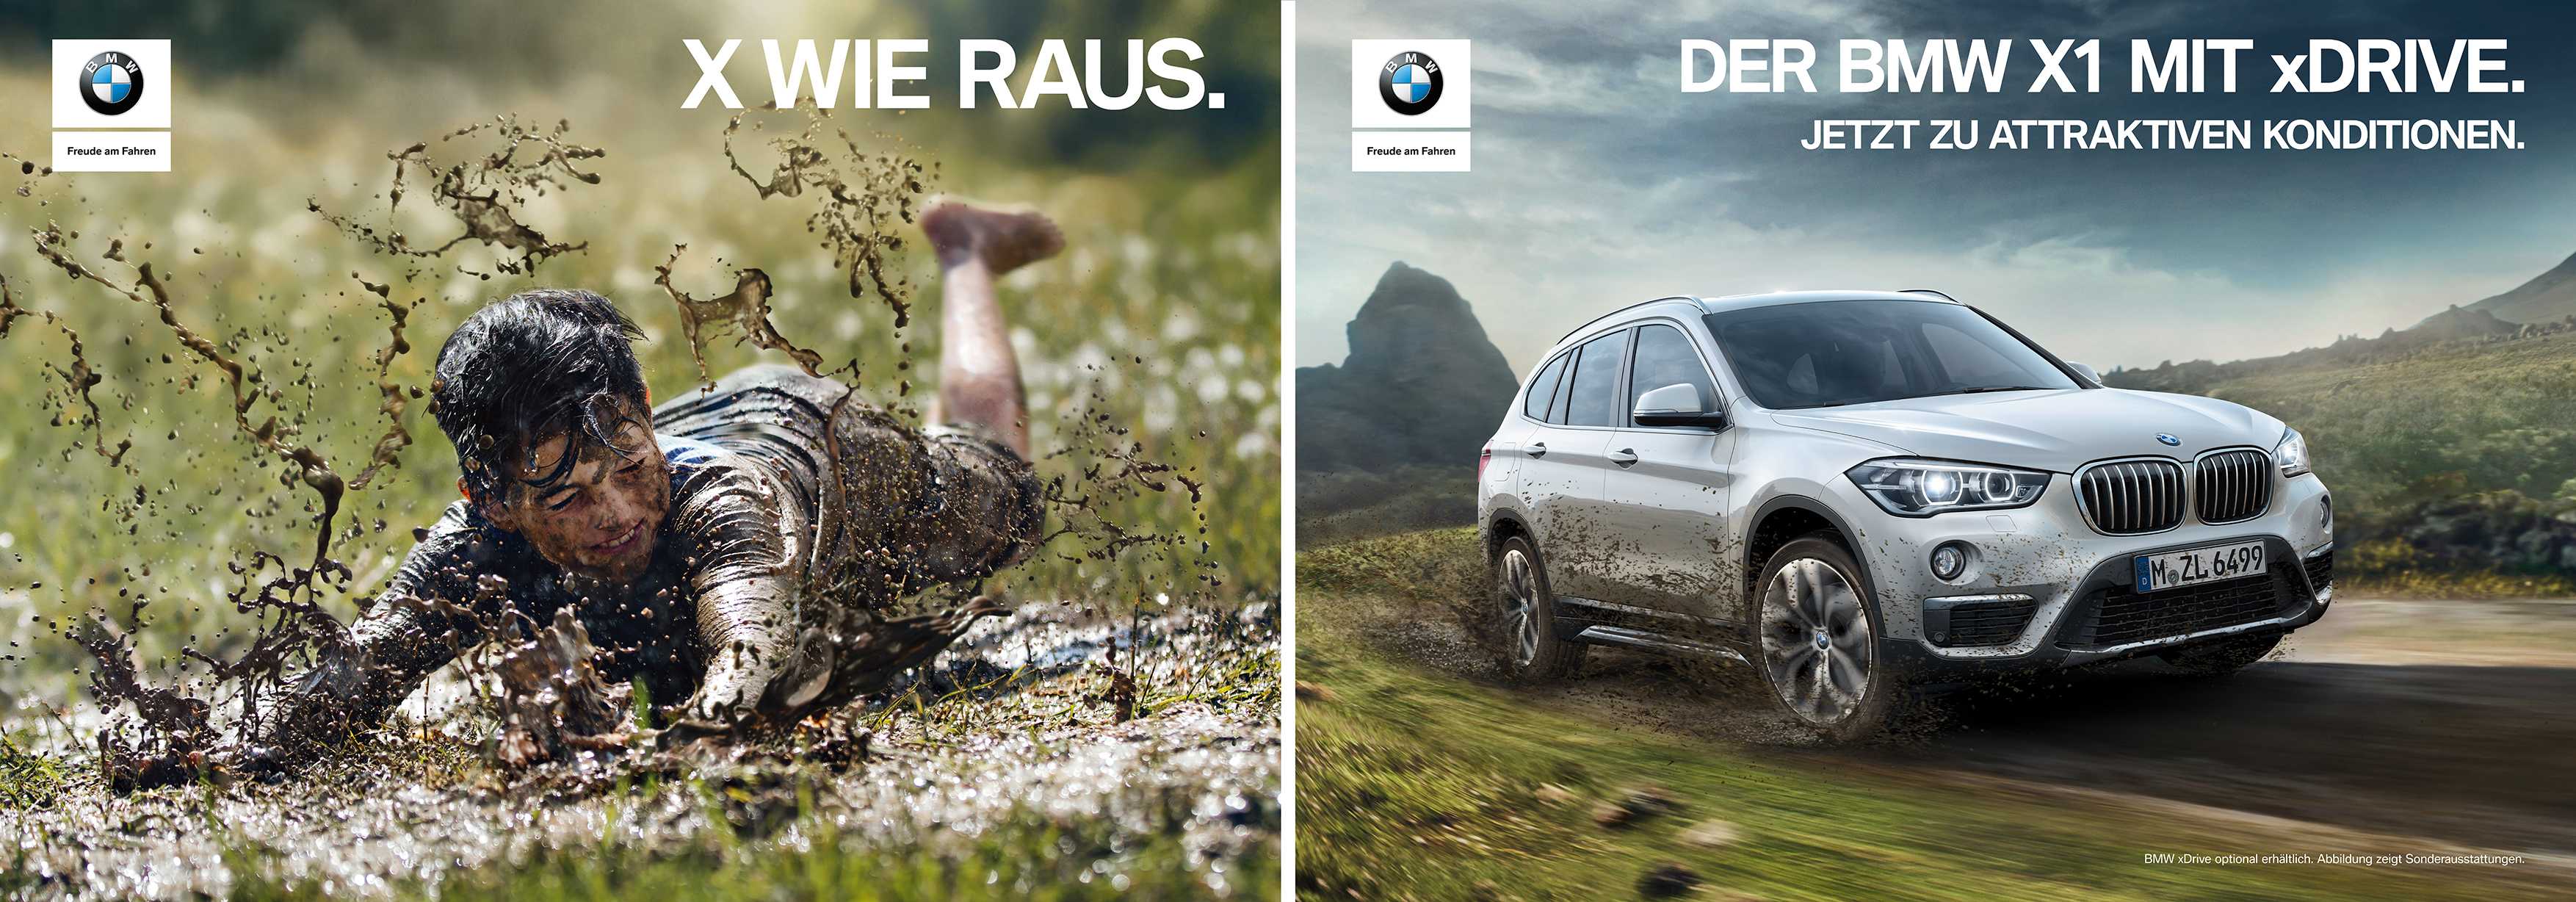 „X WIE RAUS“: Neue BMW xDrive Kampagne startet in Deutschland. (12/2016)